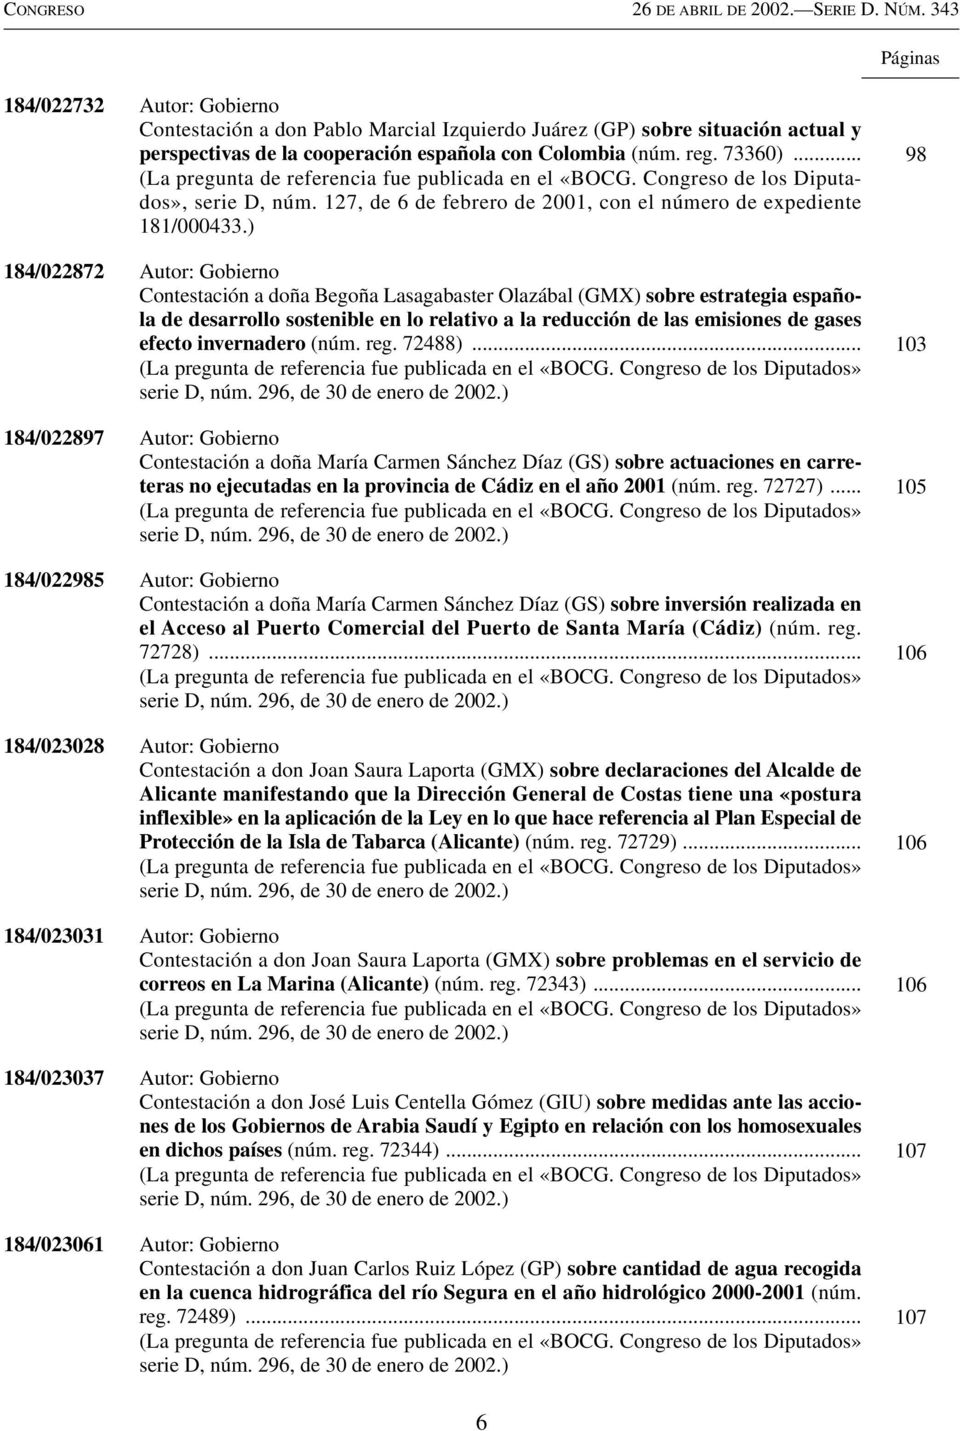 ) 184/022872 Autor: Gobierno Contestación a doña Begoña Lasagabaster Olazábal (GMX) sobre estrategia española de desarrollo sostenible en lo relativo a la reducción de las emisiones de gases efecto